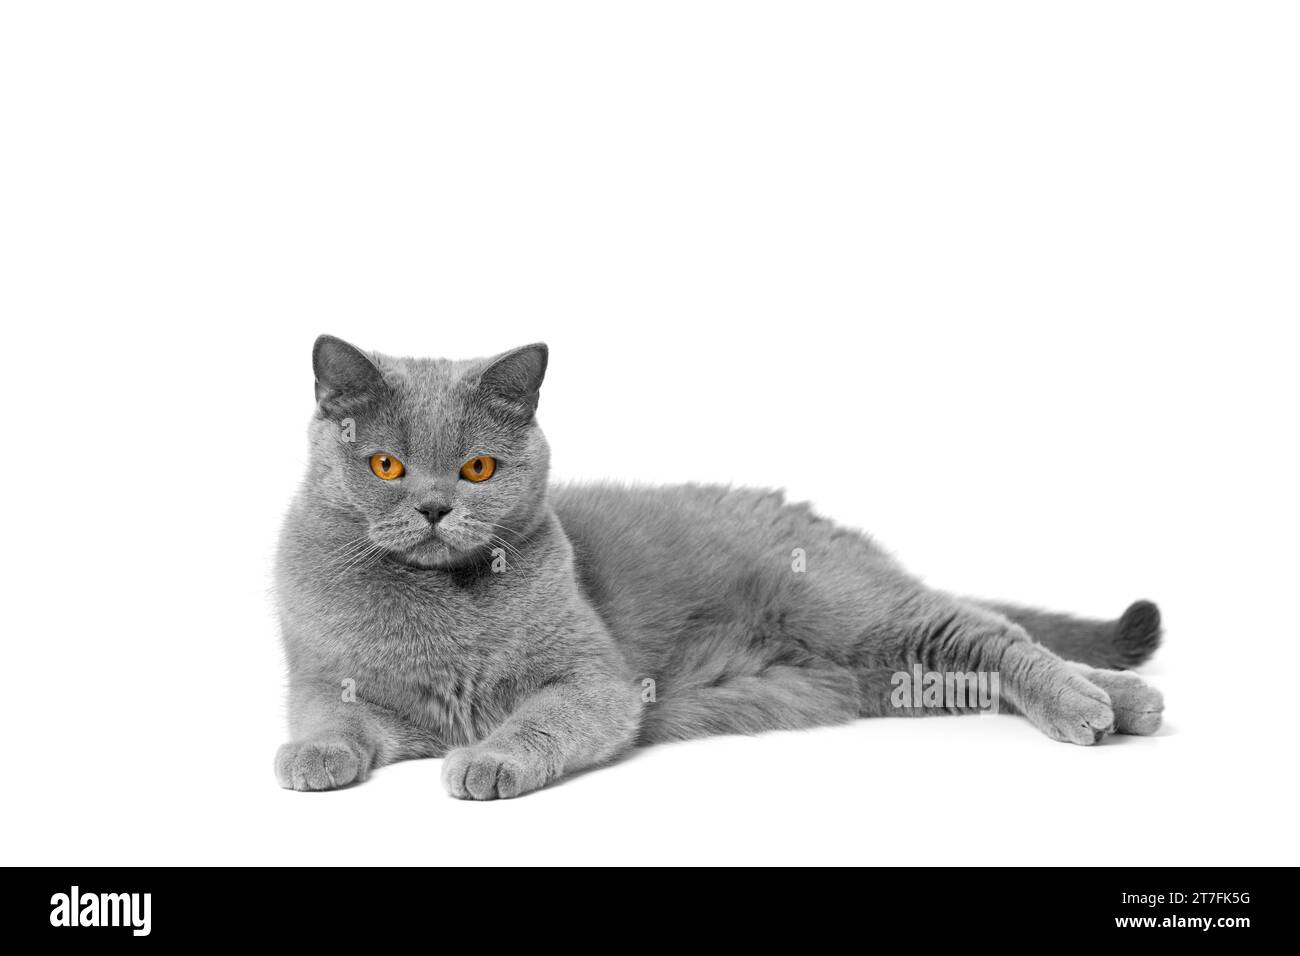 Die britische Kurzhaar-blaue Katze liegt wunderschön auf weißer Isolation und sieht mit großen orangen Augen in die Kamera. Graue reinrassige Katze auf weißem Hintergrund Stockfoto